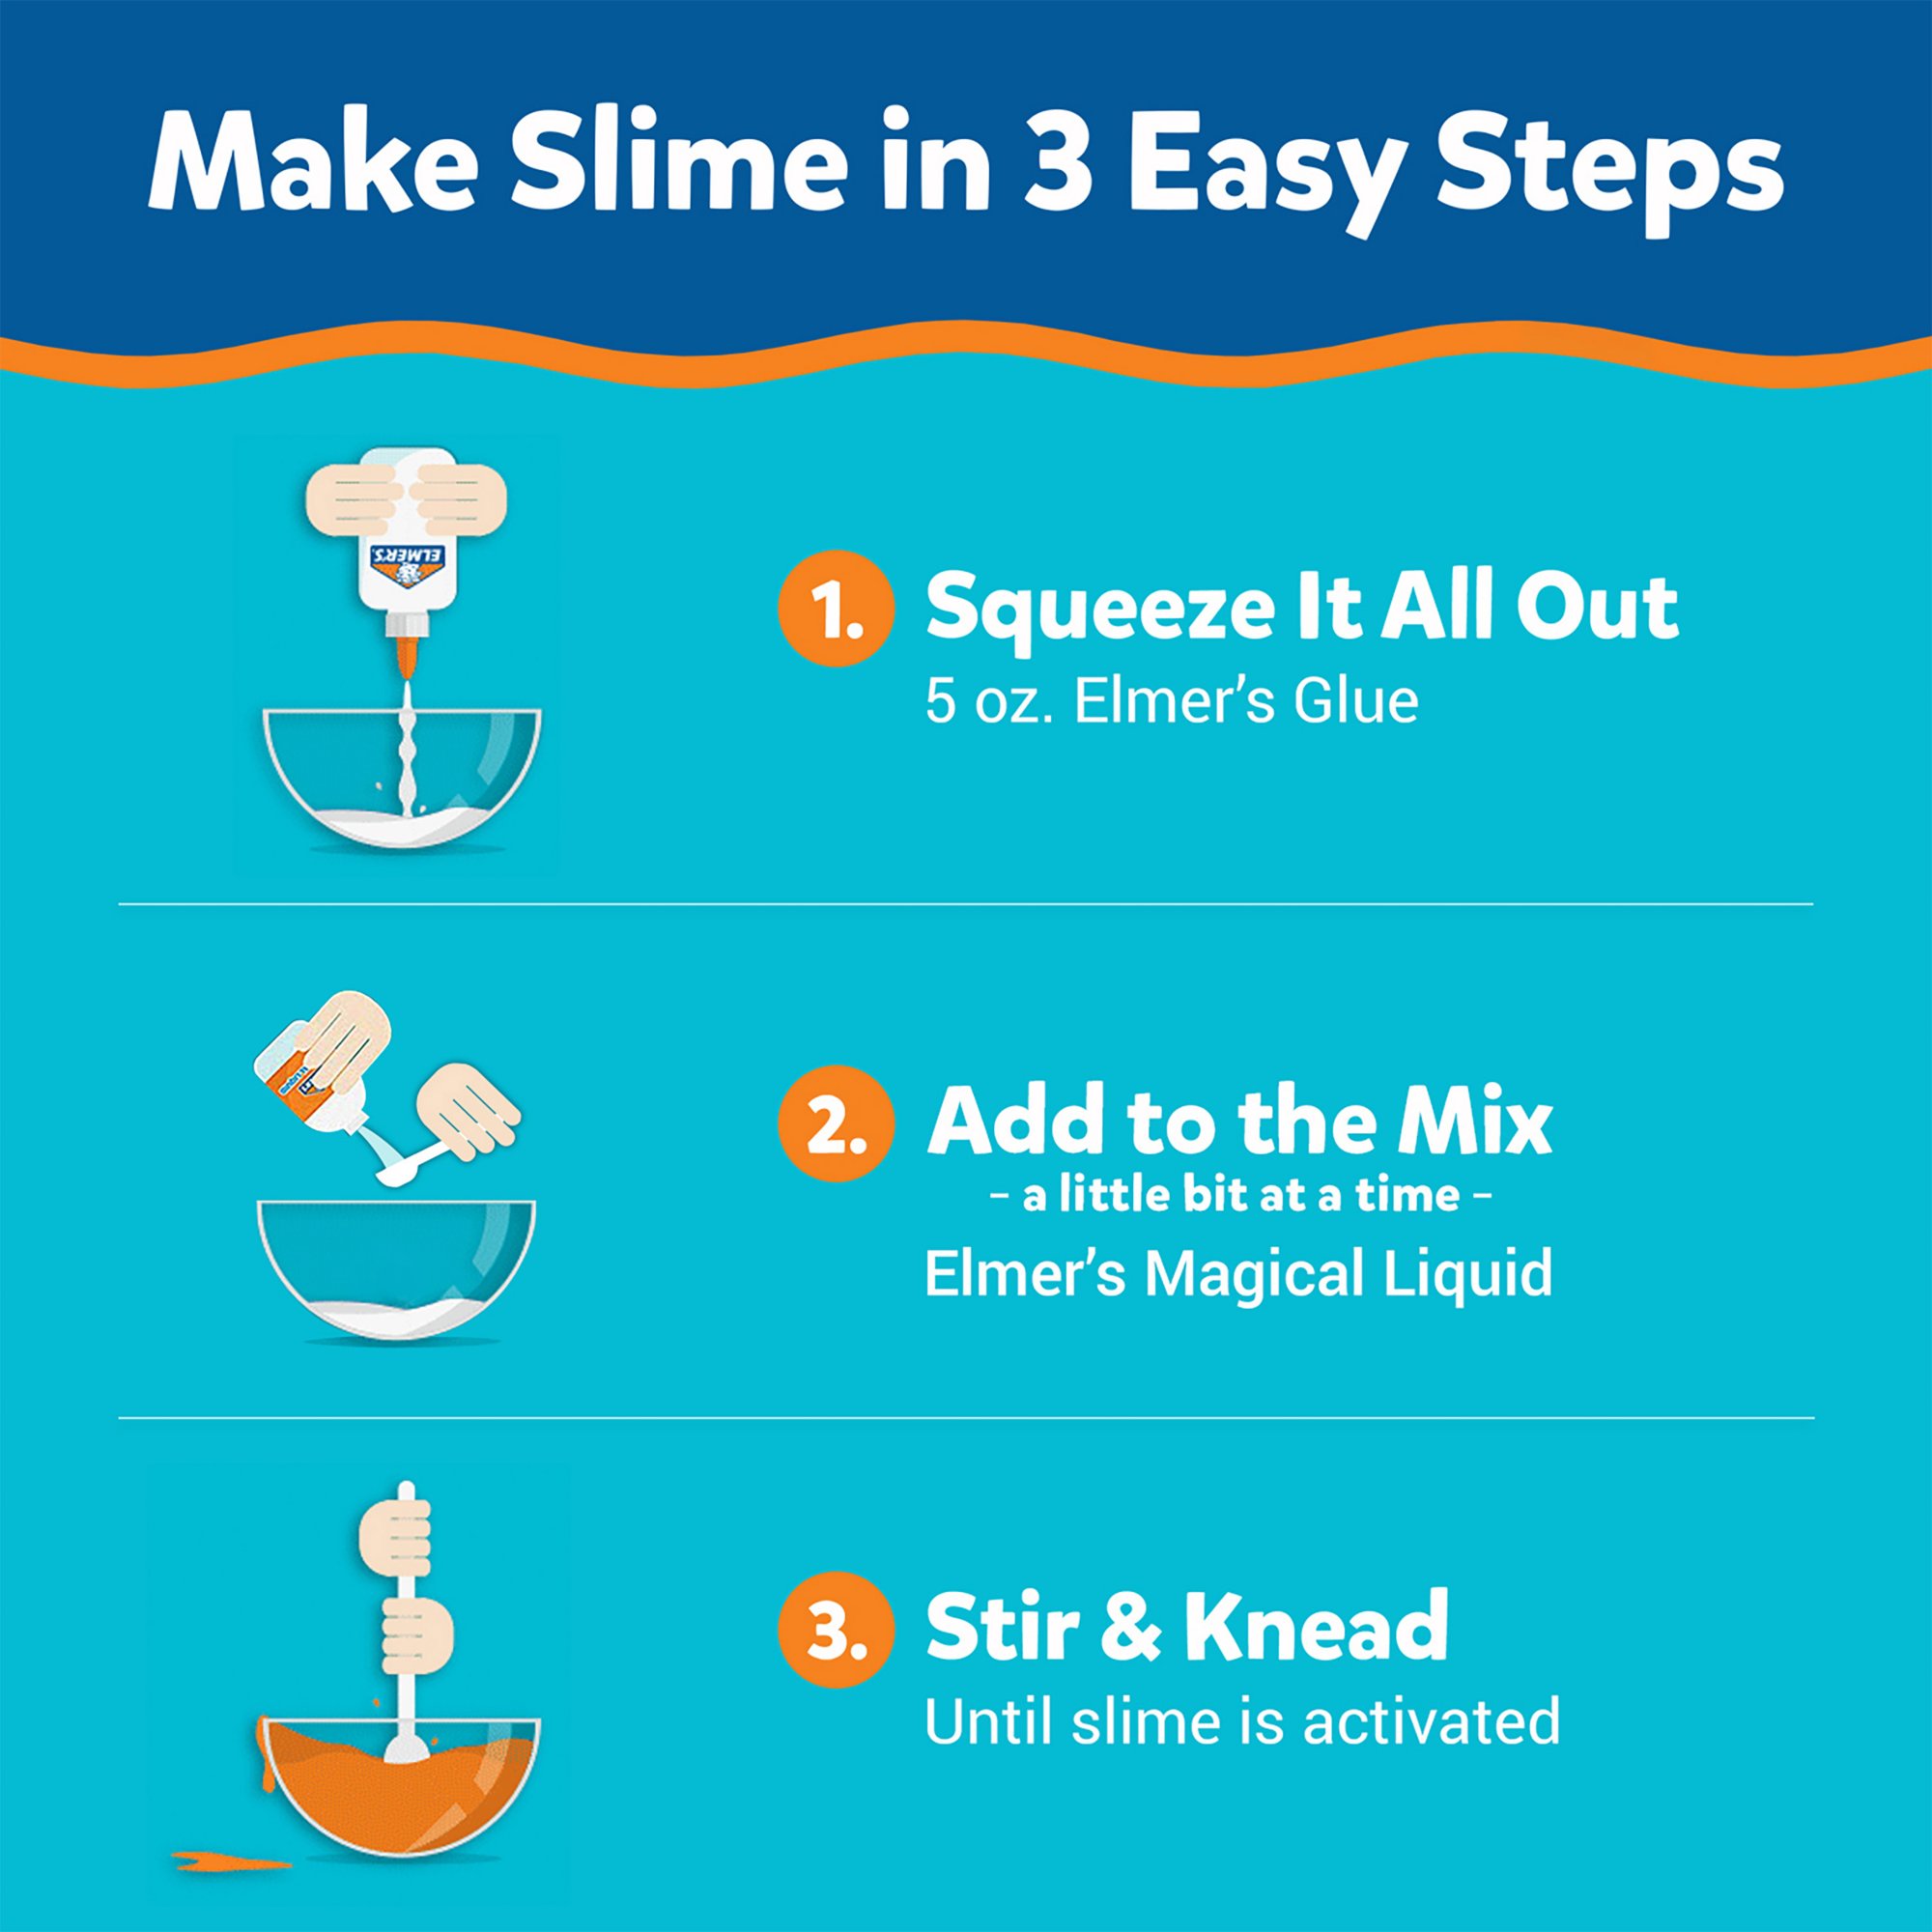 Elmer's All-Star Slime Kit